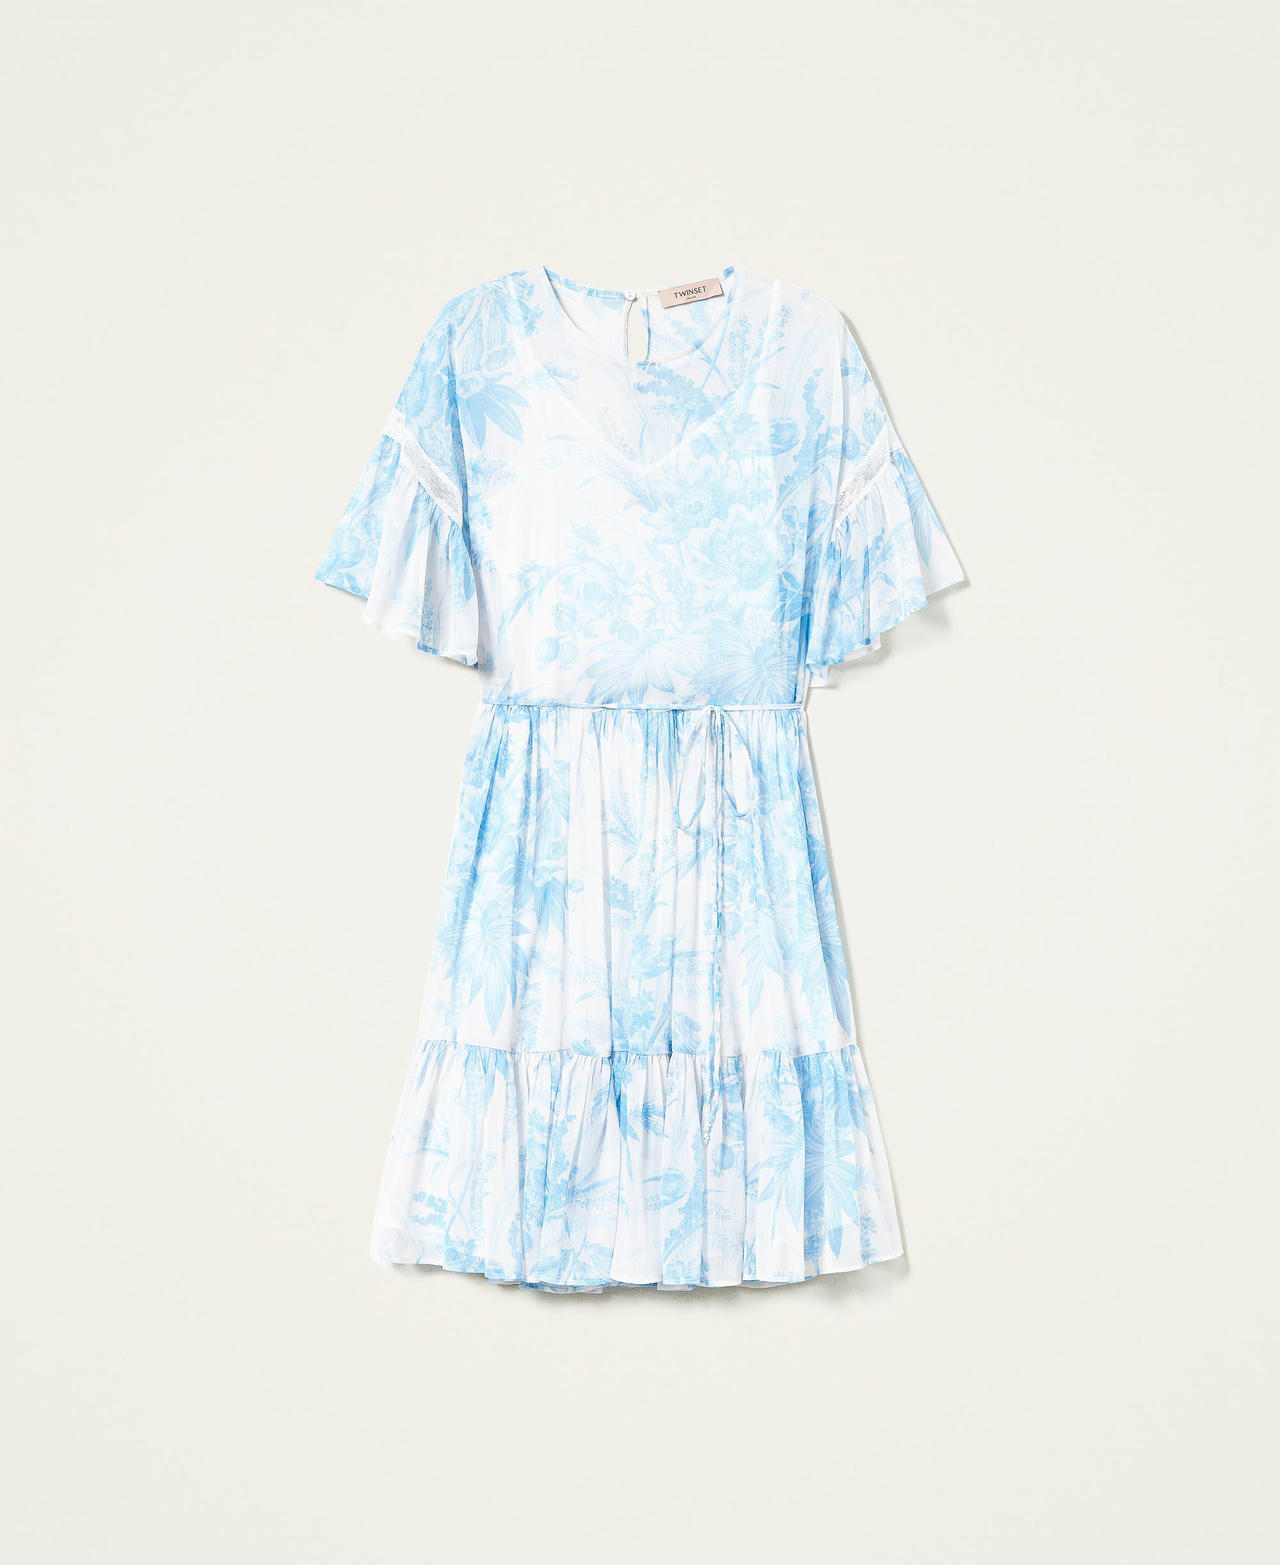 Robe avec imprimé floral toile de Jouy Imprimé Fleur Sanderson Blanc « Neige »/Bleu Femme 221TP2712-0S